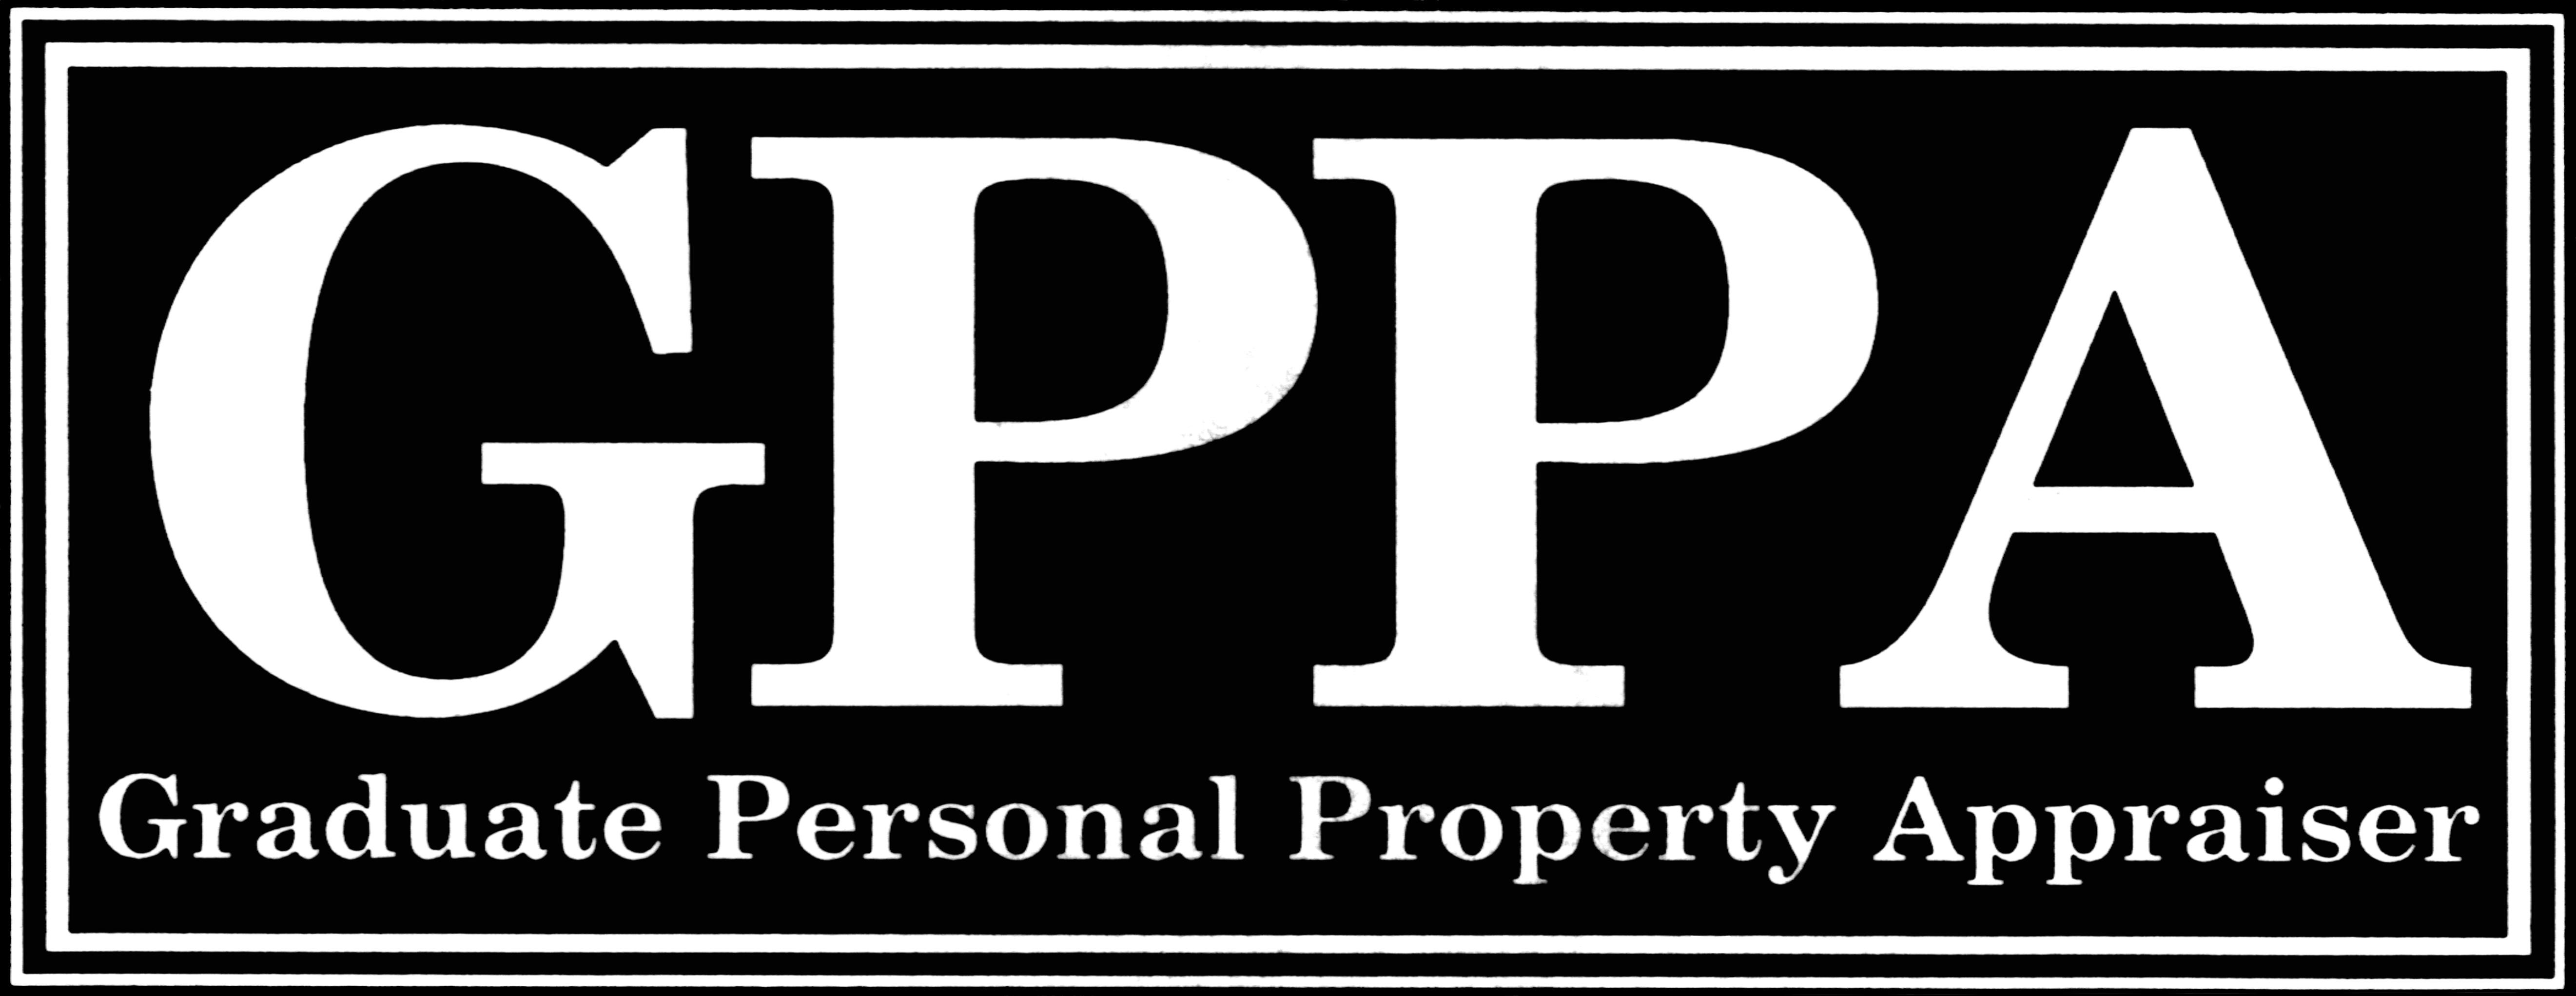 BKR Appraiser Site St Louis Mo, Graduate Personal Property Appraiser